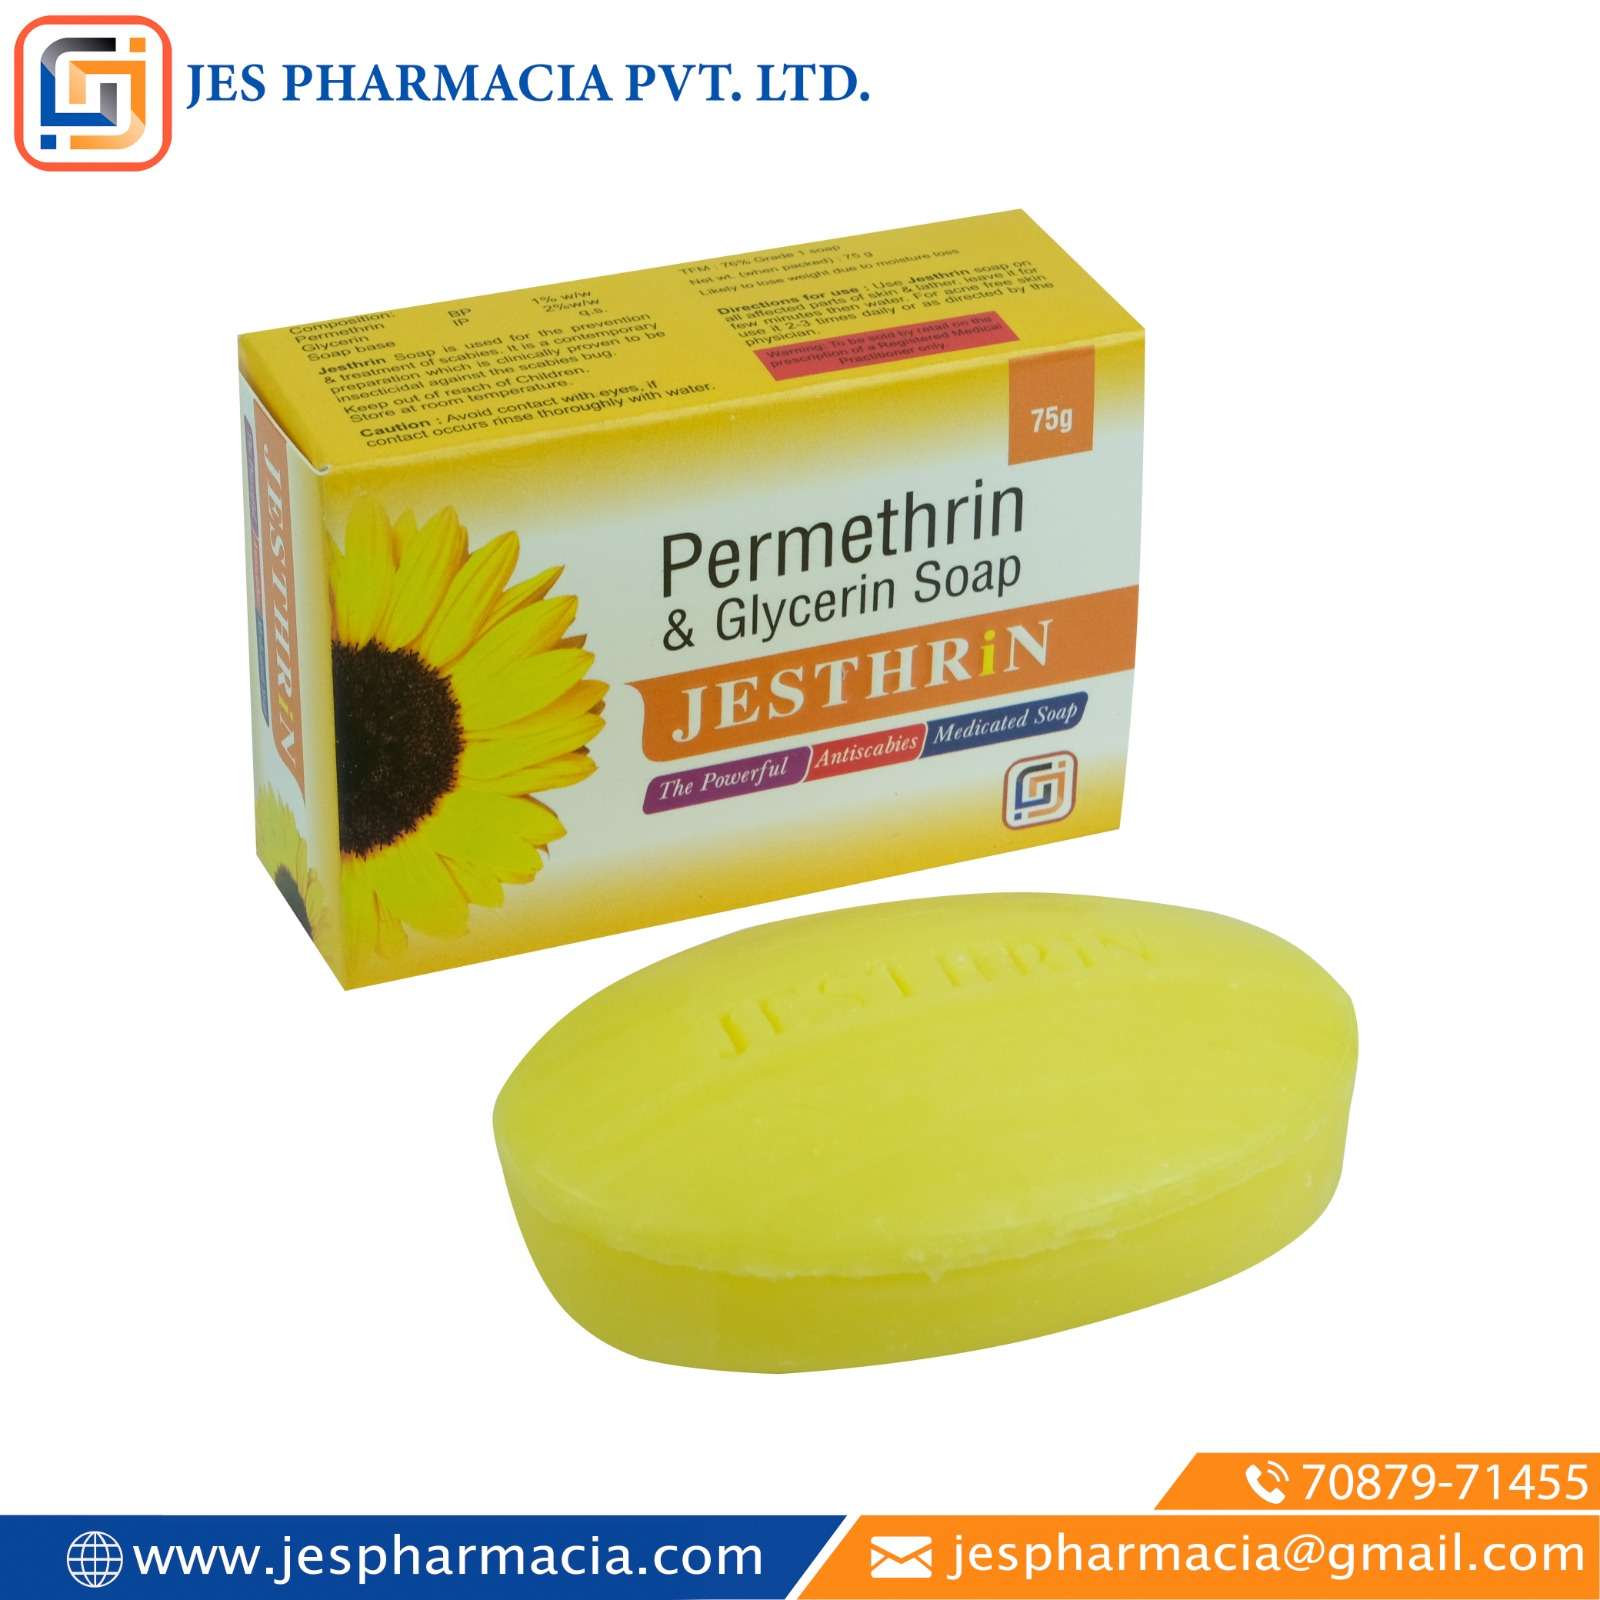 permethrin 1% w/w+ glycerine 2% w/w soap